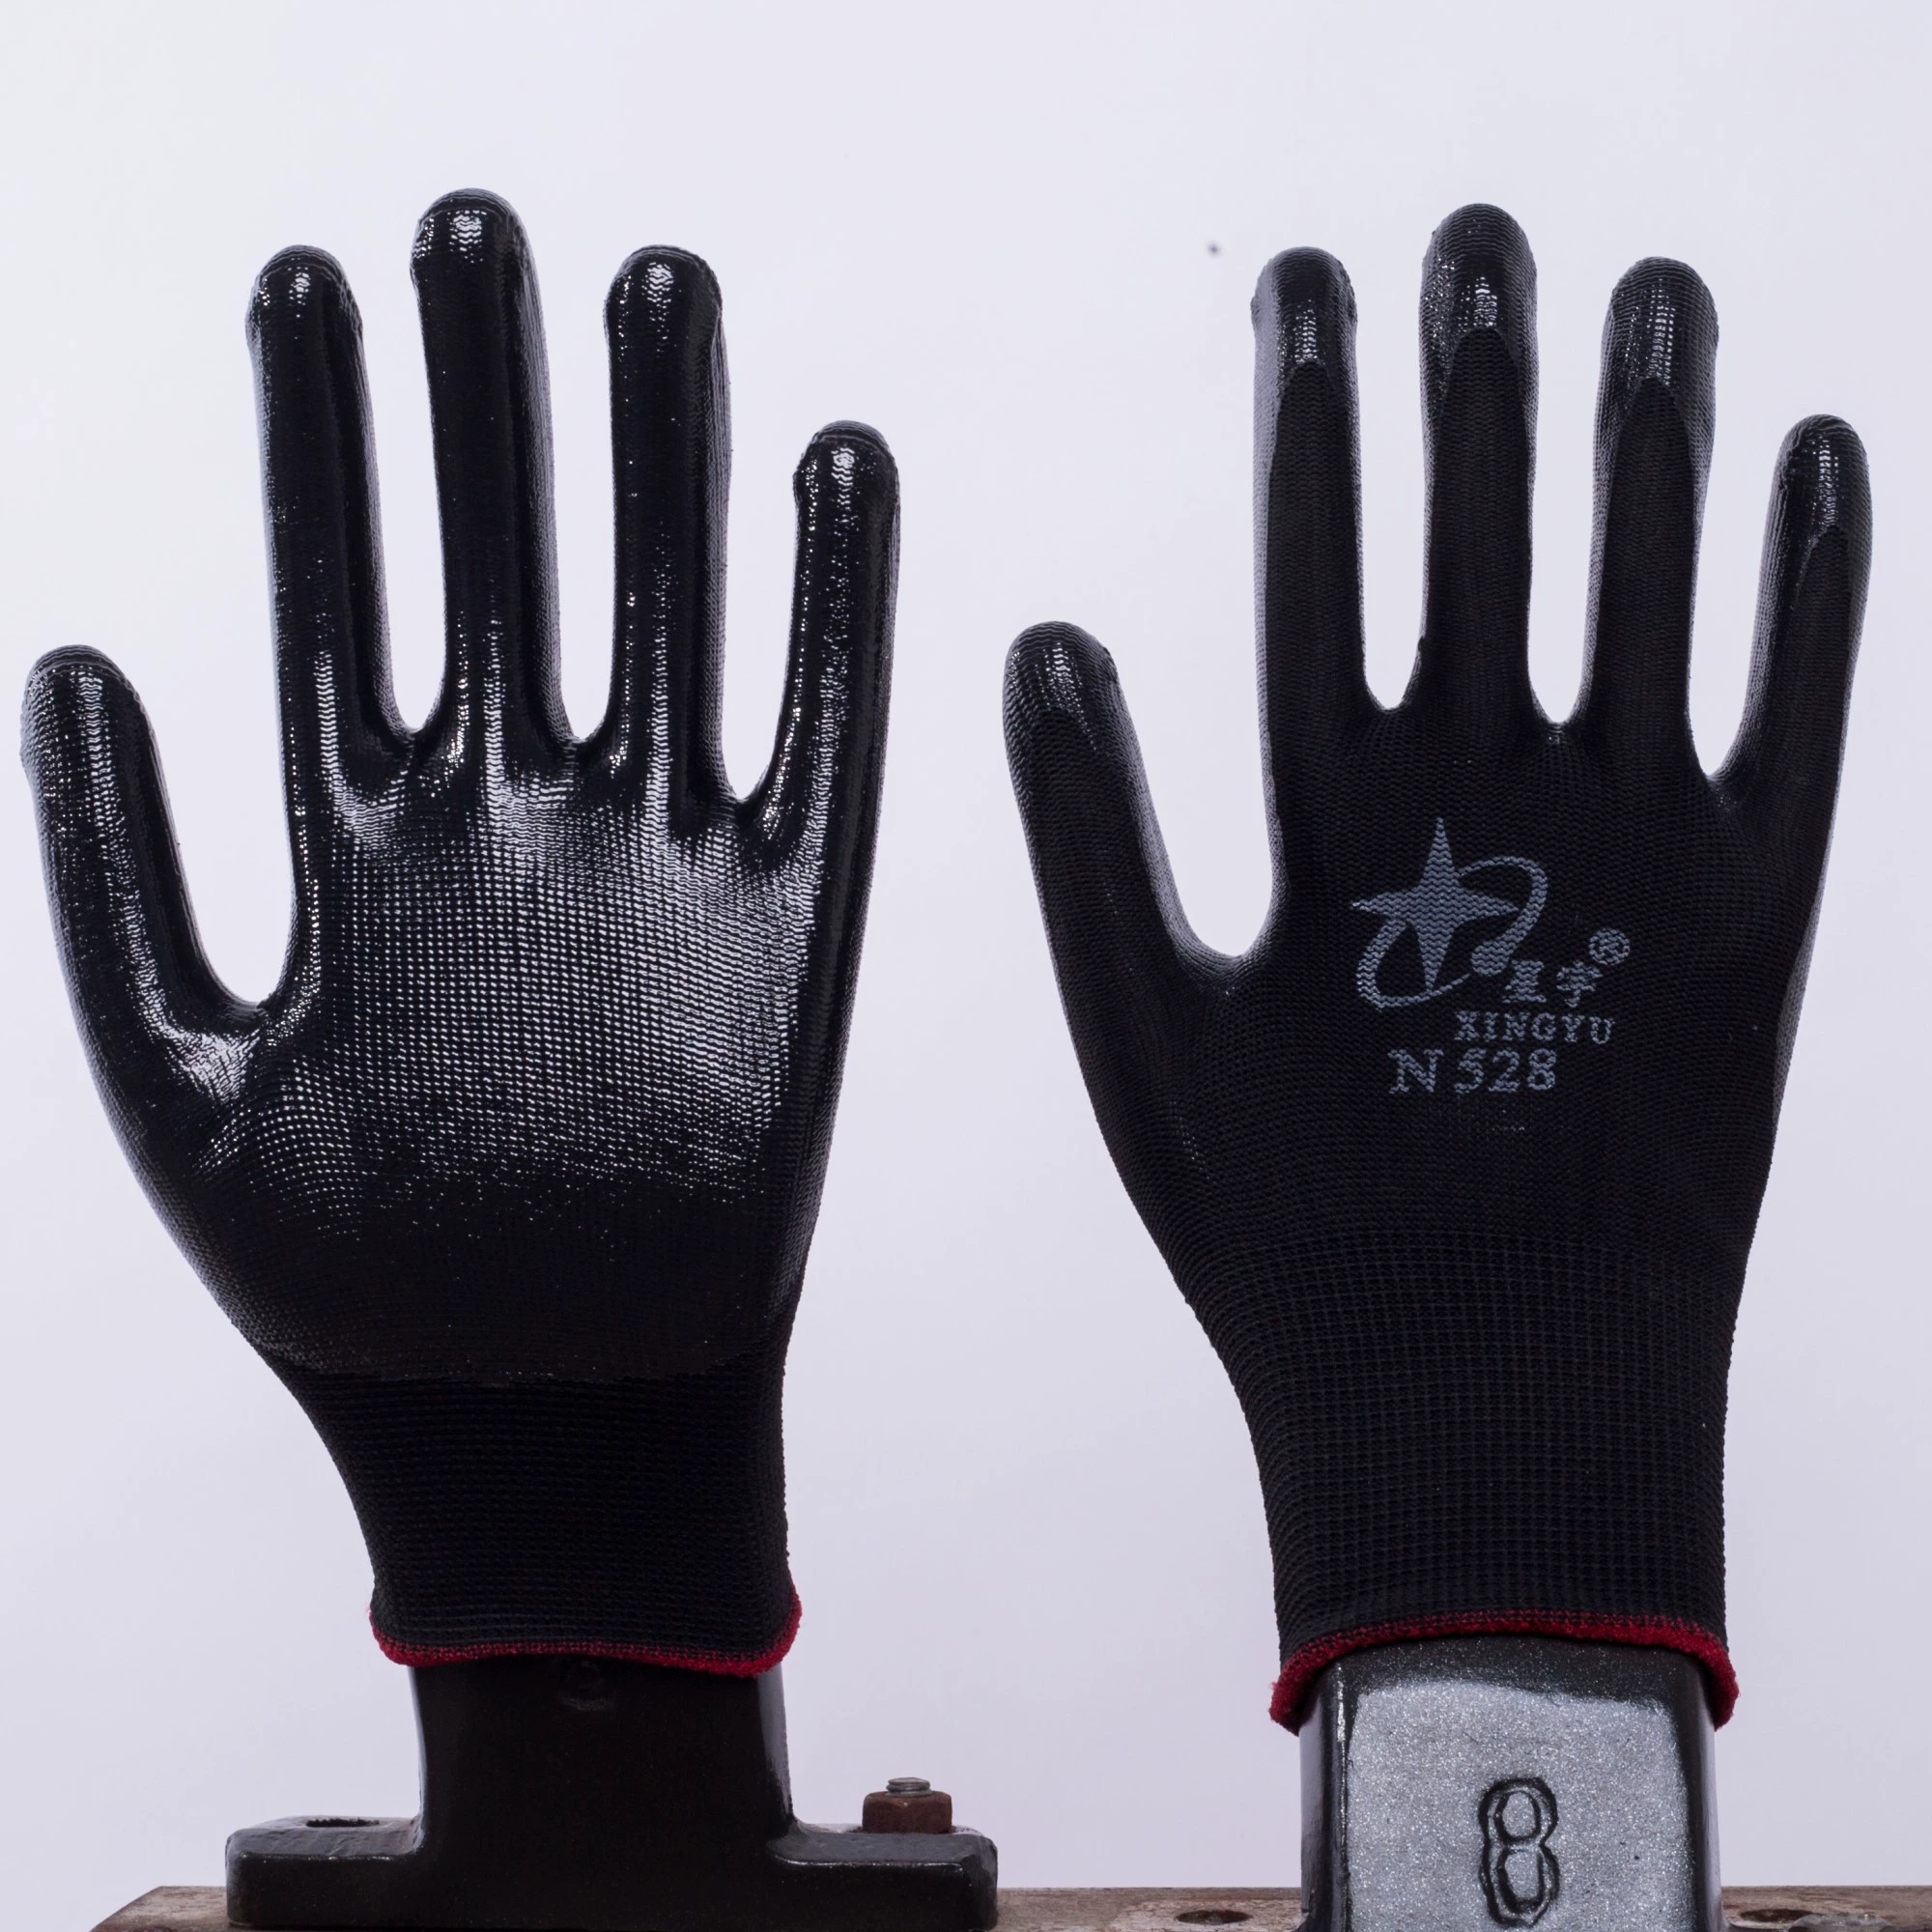 12 đôi miễn phí vận chuyển Hongyu N529 Dingqing găng tay bảo hộ lao động nhúng găng tay găng tay bảo hộ lao động do Sơn Đông Xingyu Găng tay sản xuất găng tay bảo hộ 